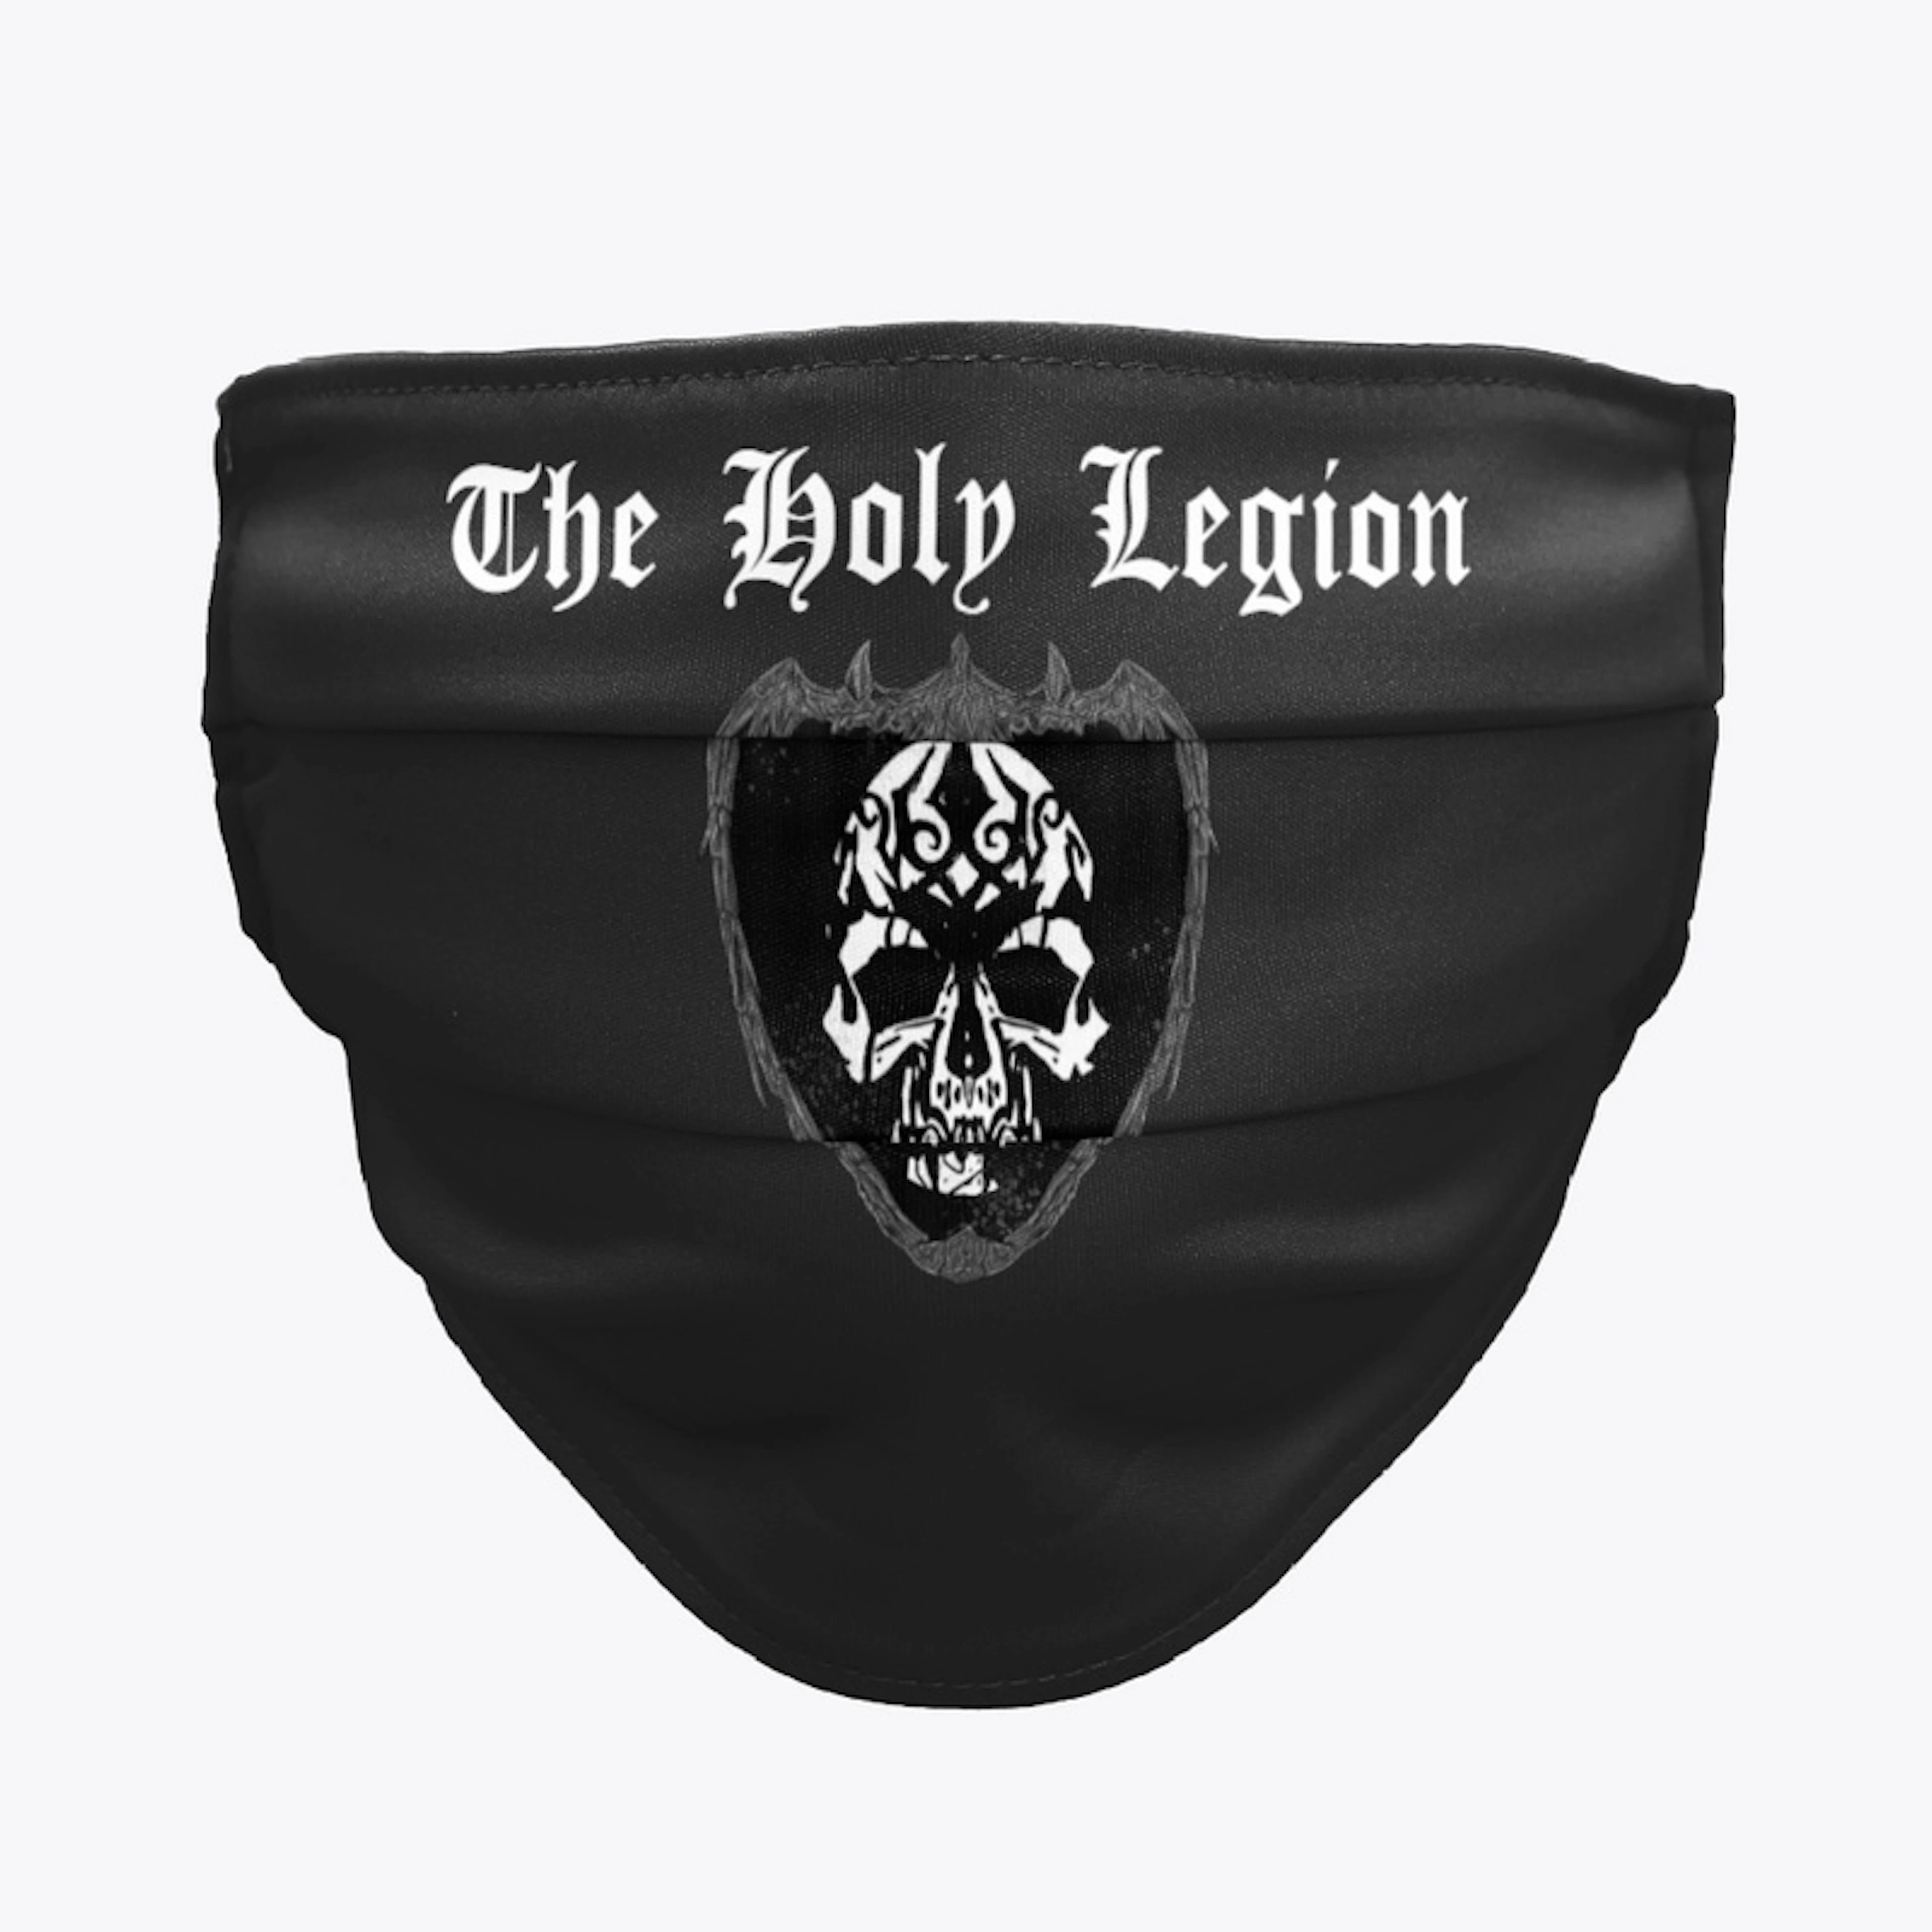 Holy Legion mask